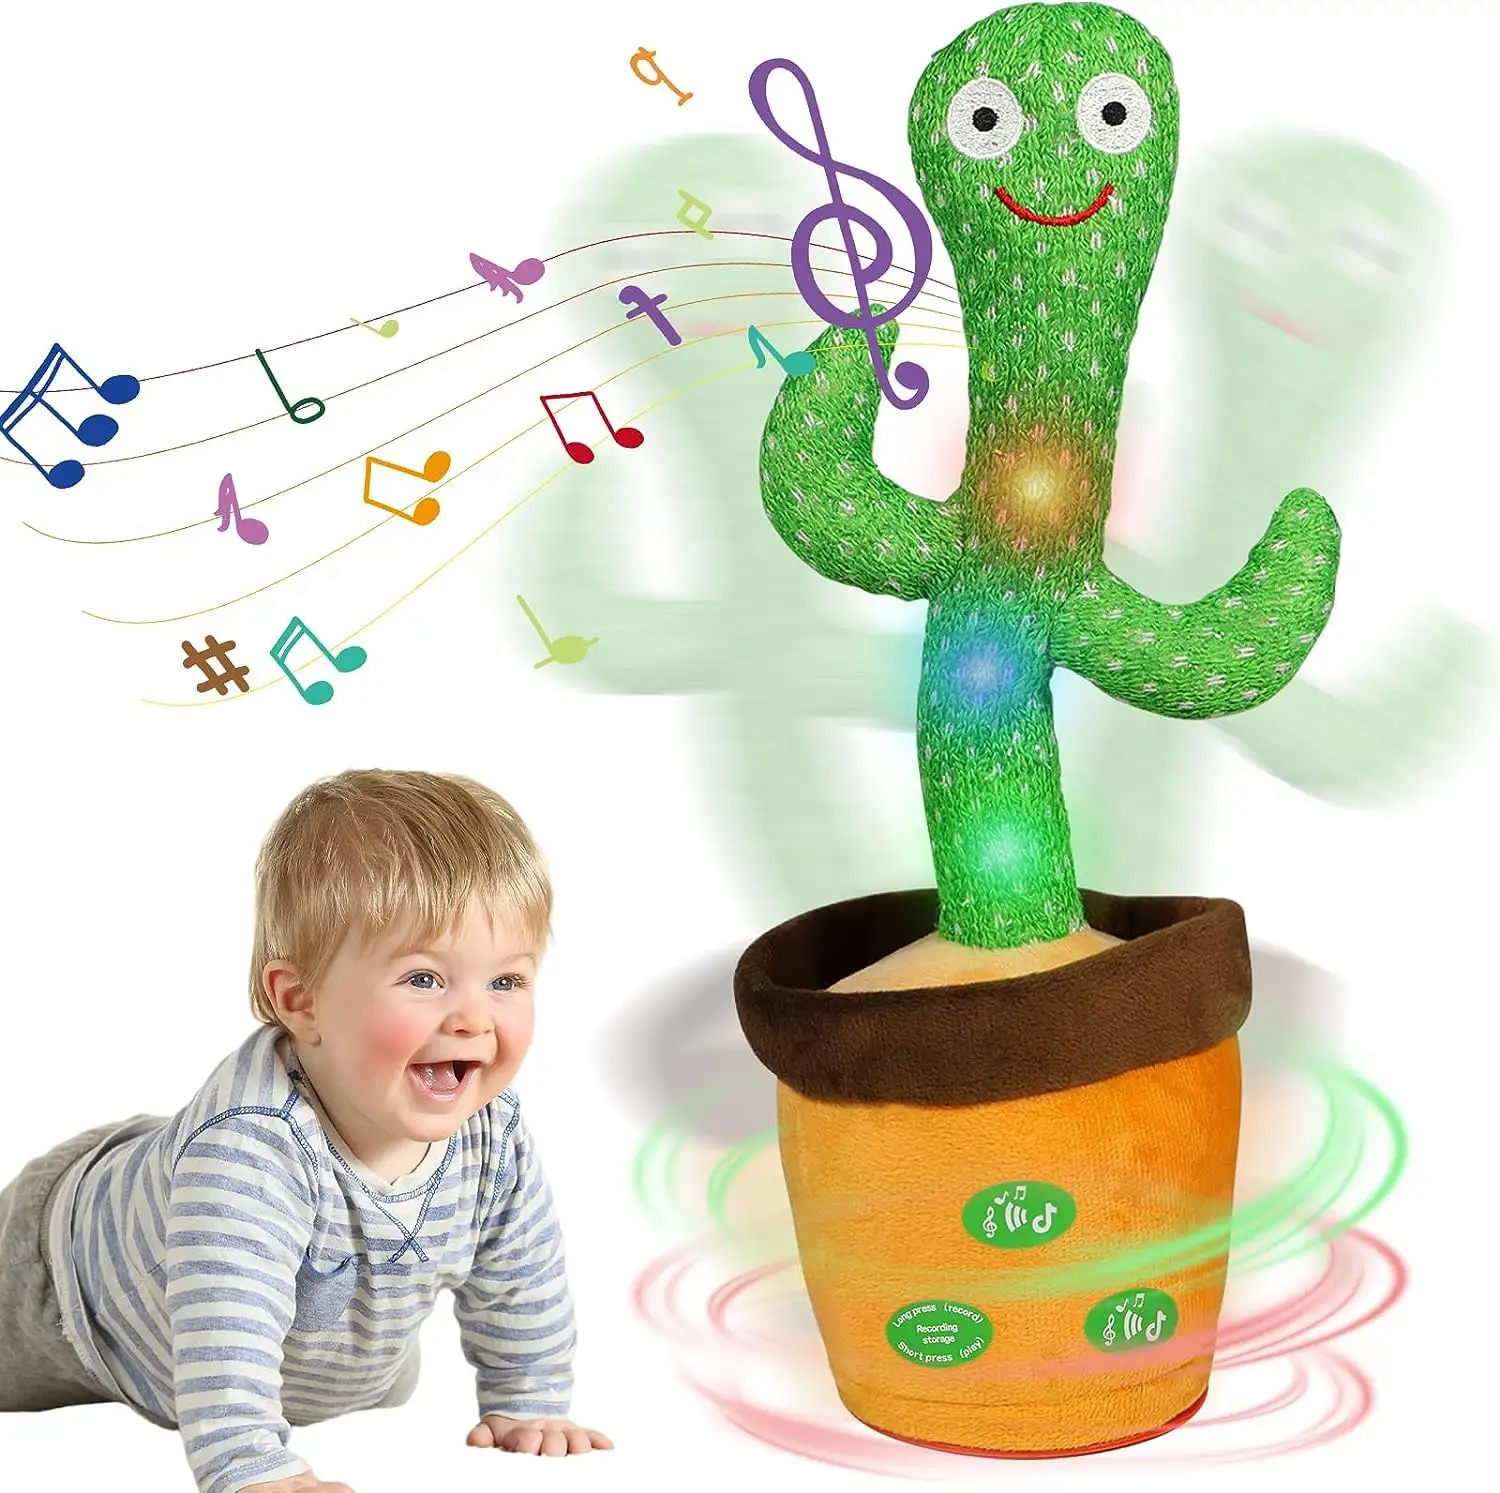 AUF STAND Kawaii niedlich leuchtend singend tanzend sprechen aufnehmend weich gefüllt interaktiv Pflanze elektrischer Kaktus plüsch-Spielzeug geschenk kinder